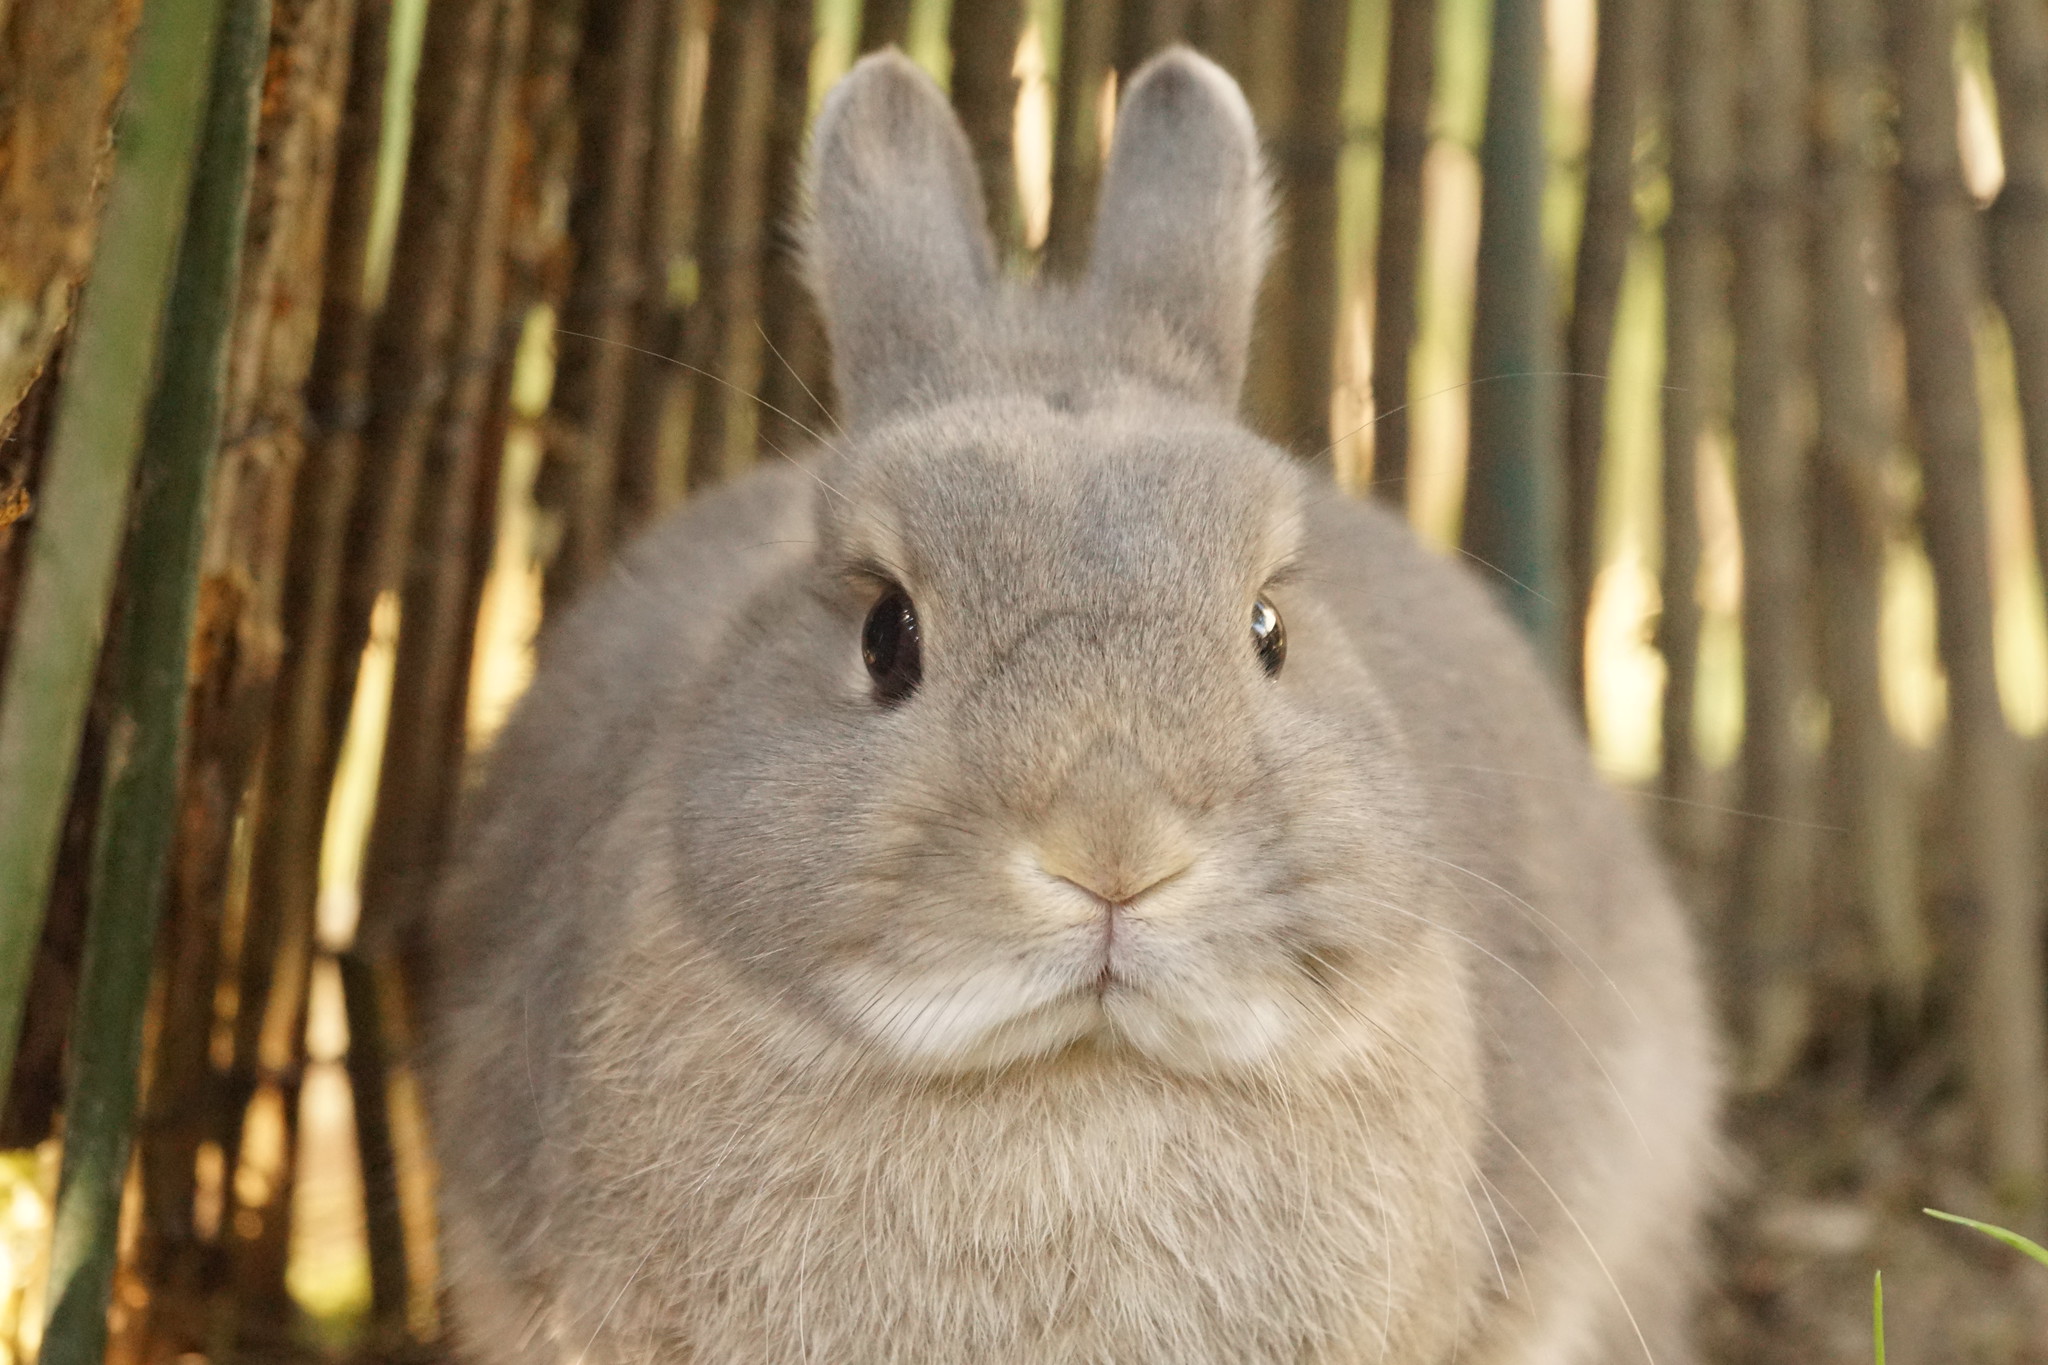 Pourquoi les lapins n’ont-ils que très peu grossi au cours de leur évolution ? © Tjflex2, Flickr